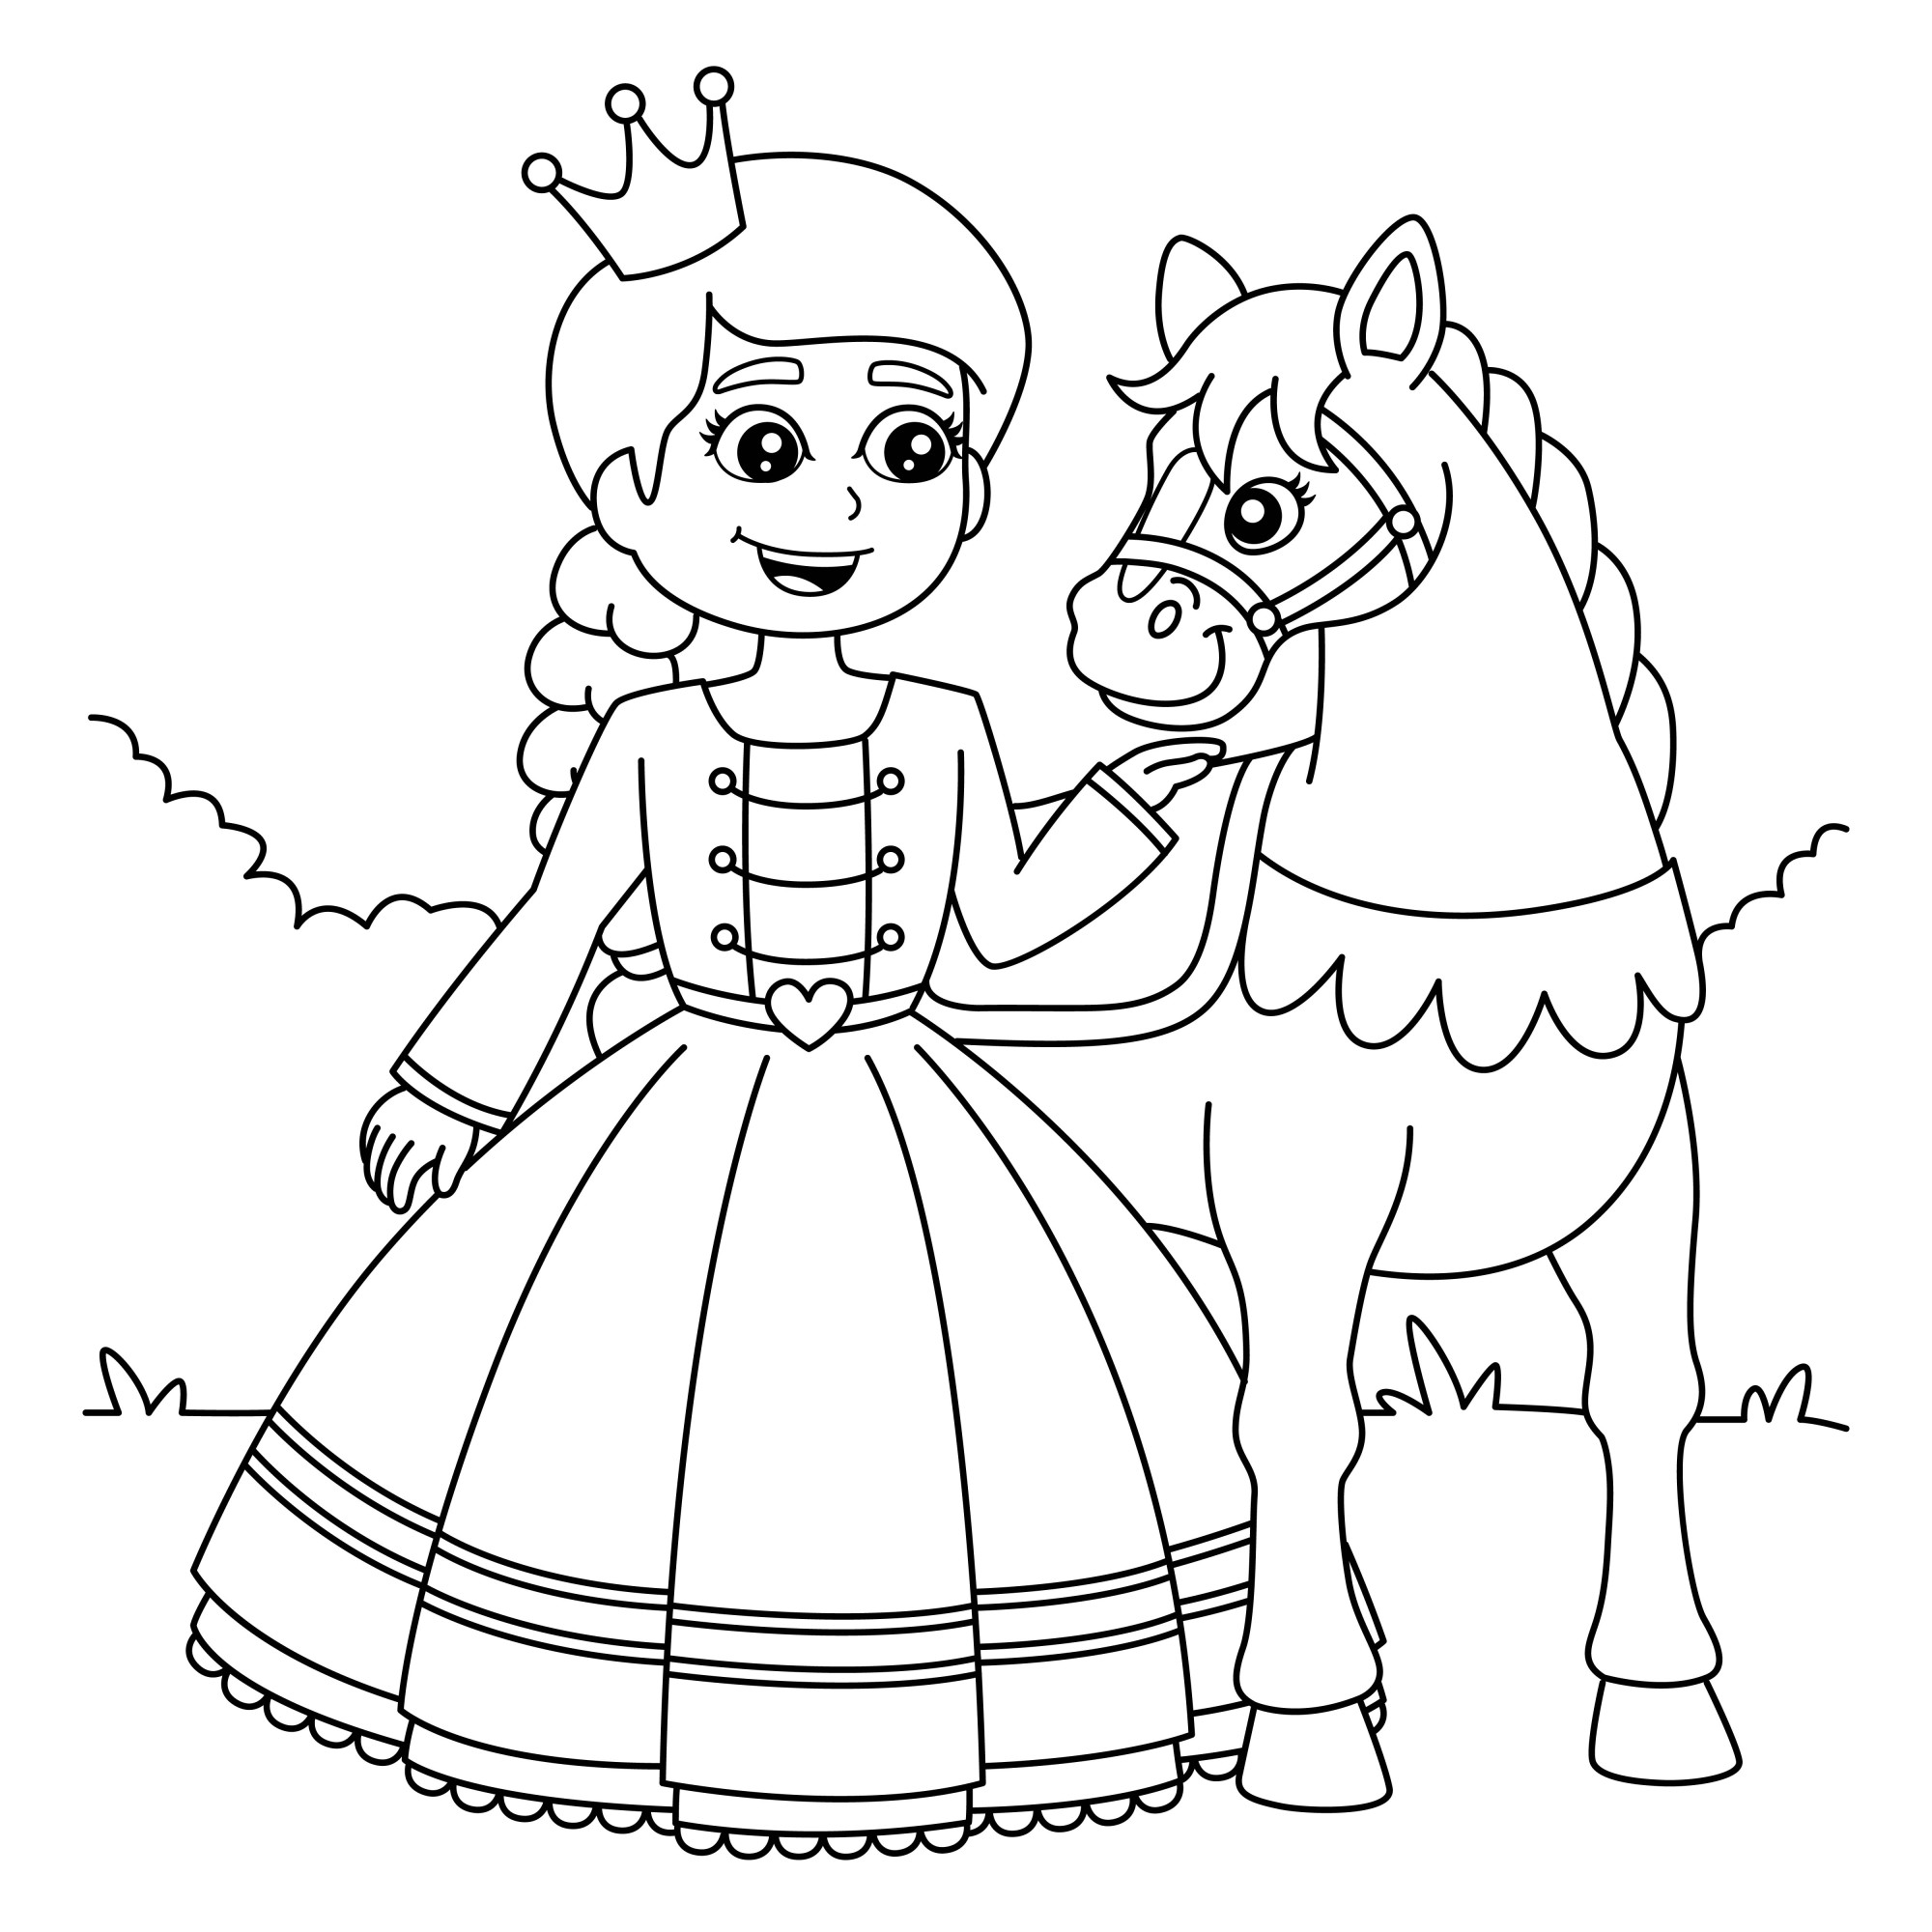 Раскраска для детей: принцесса с пони